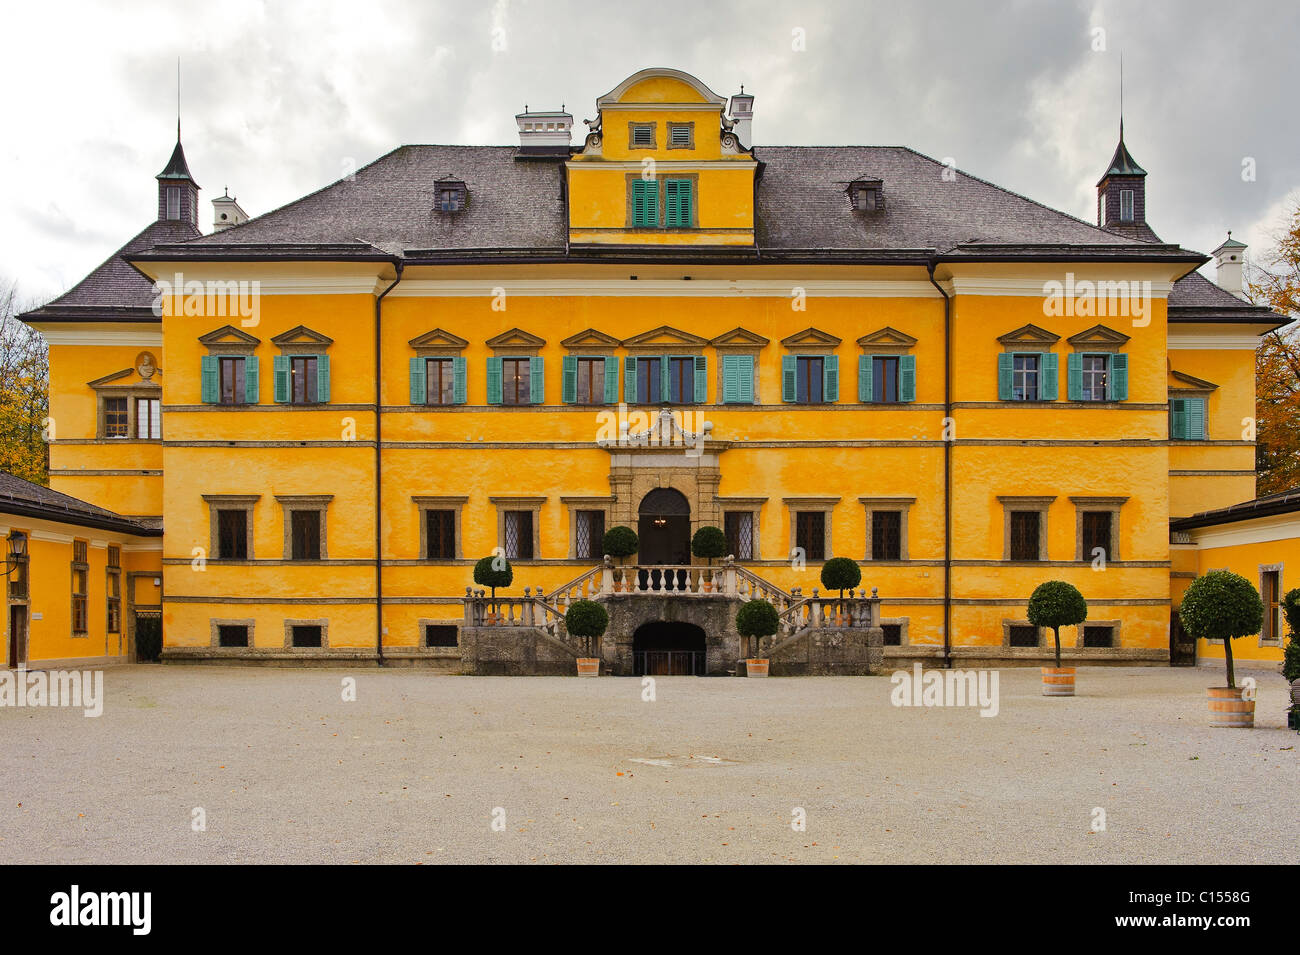 Vorderansicht des Schlosses Hellbrunn vom Hof Salzburg Österreich Stockfoto